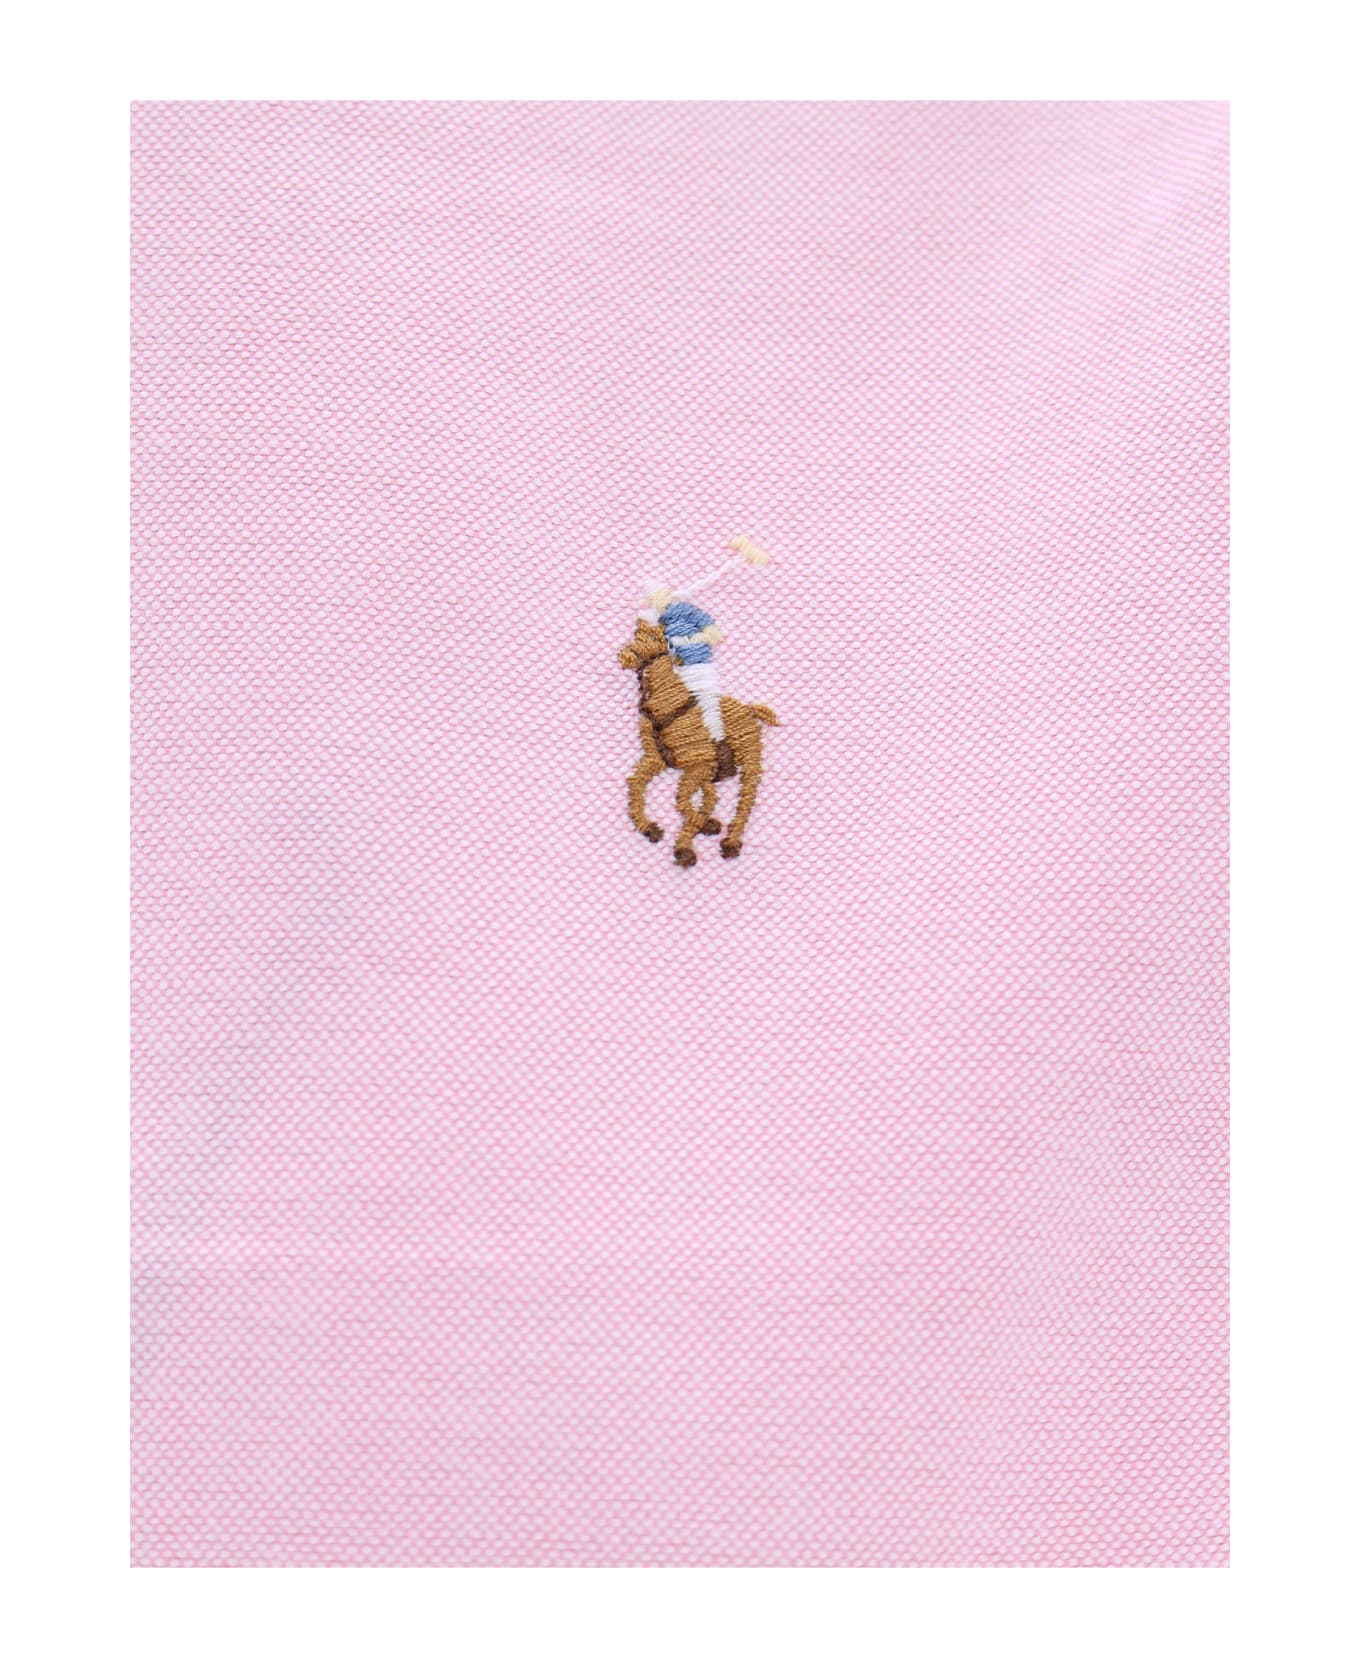 Ralph Lauren Shirt - PINK シャツ